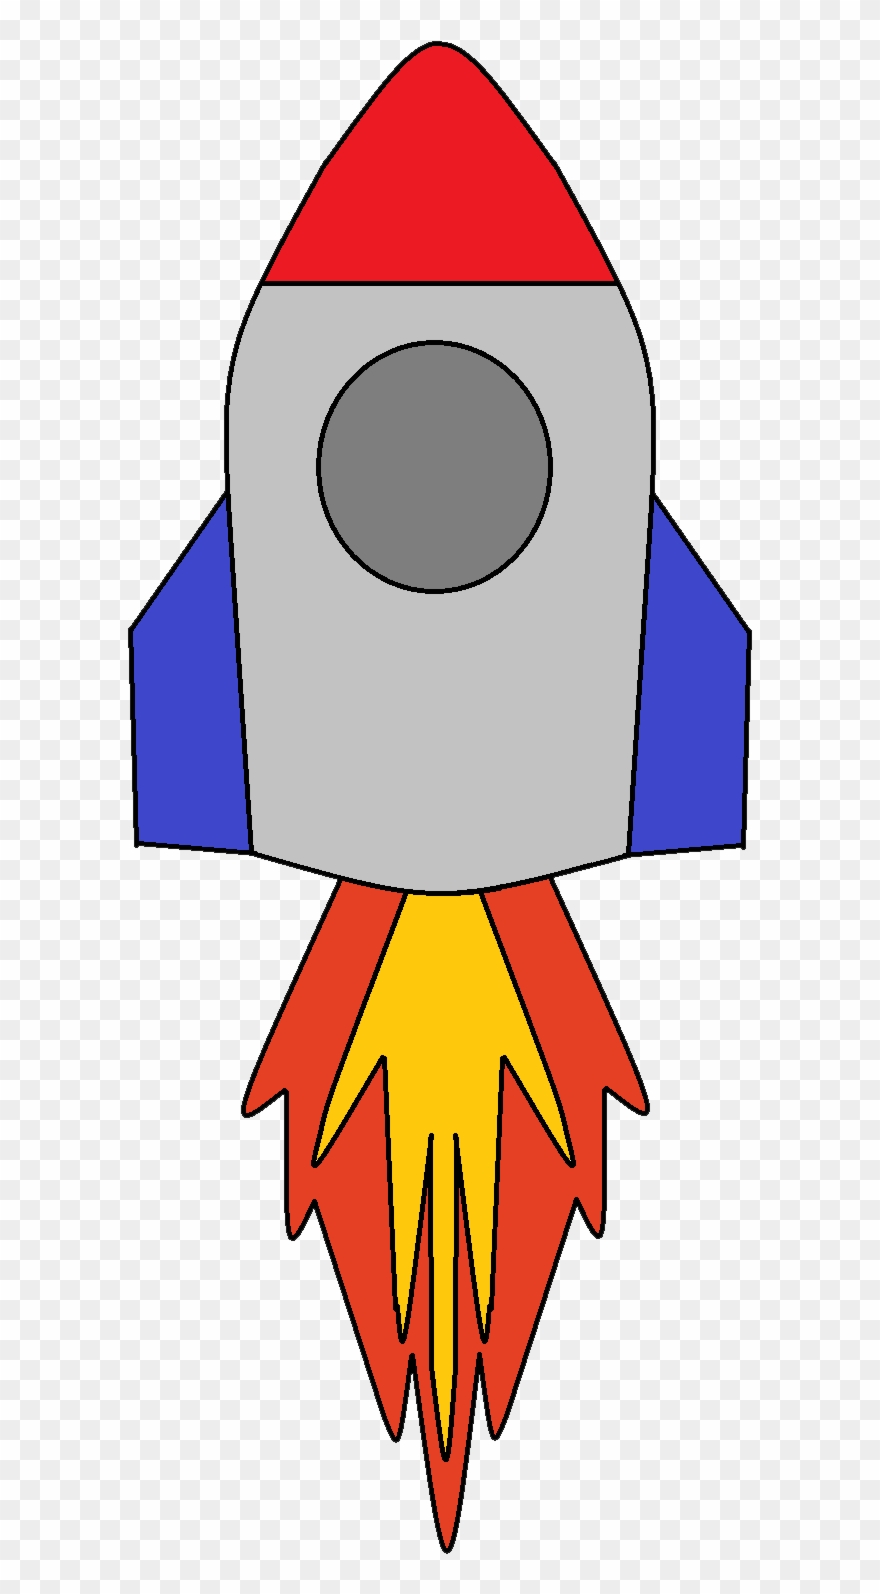 Ship clip art page. Clipart rocket rocket nasa